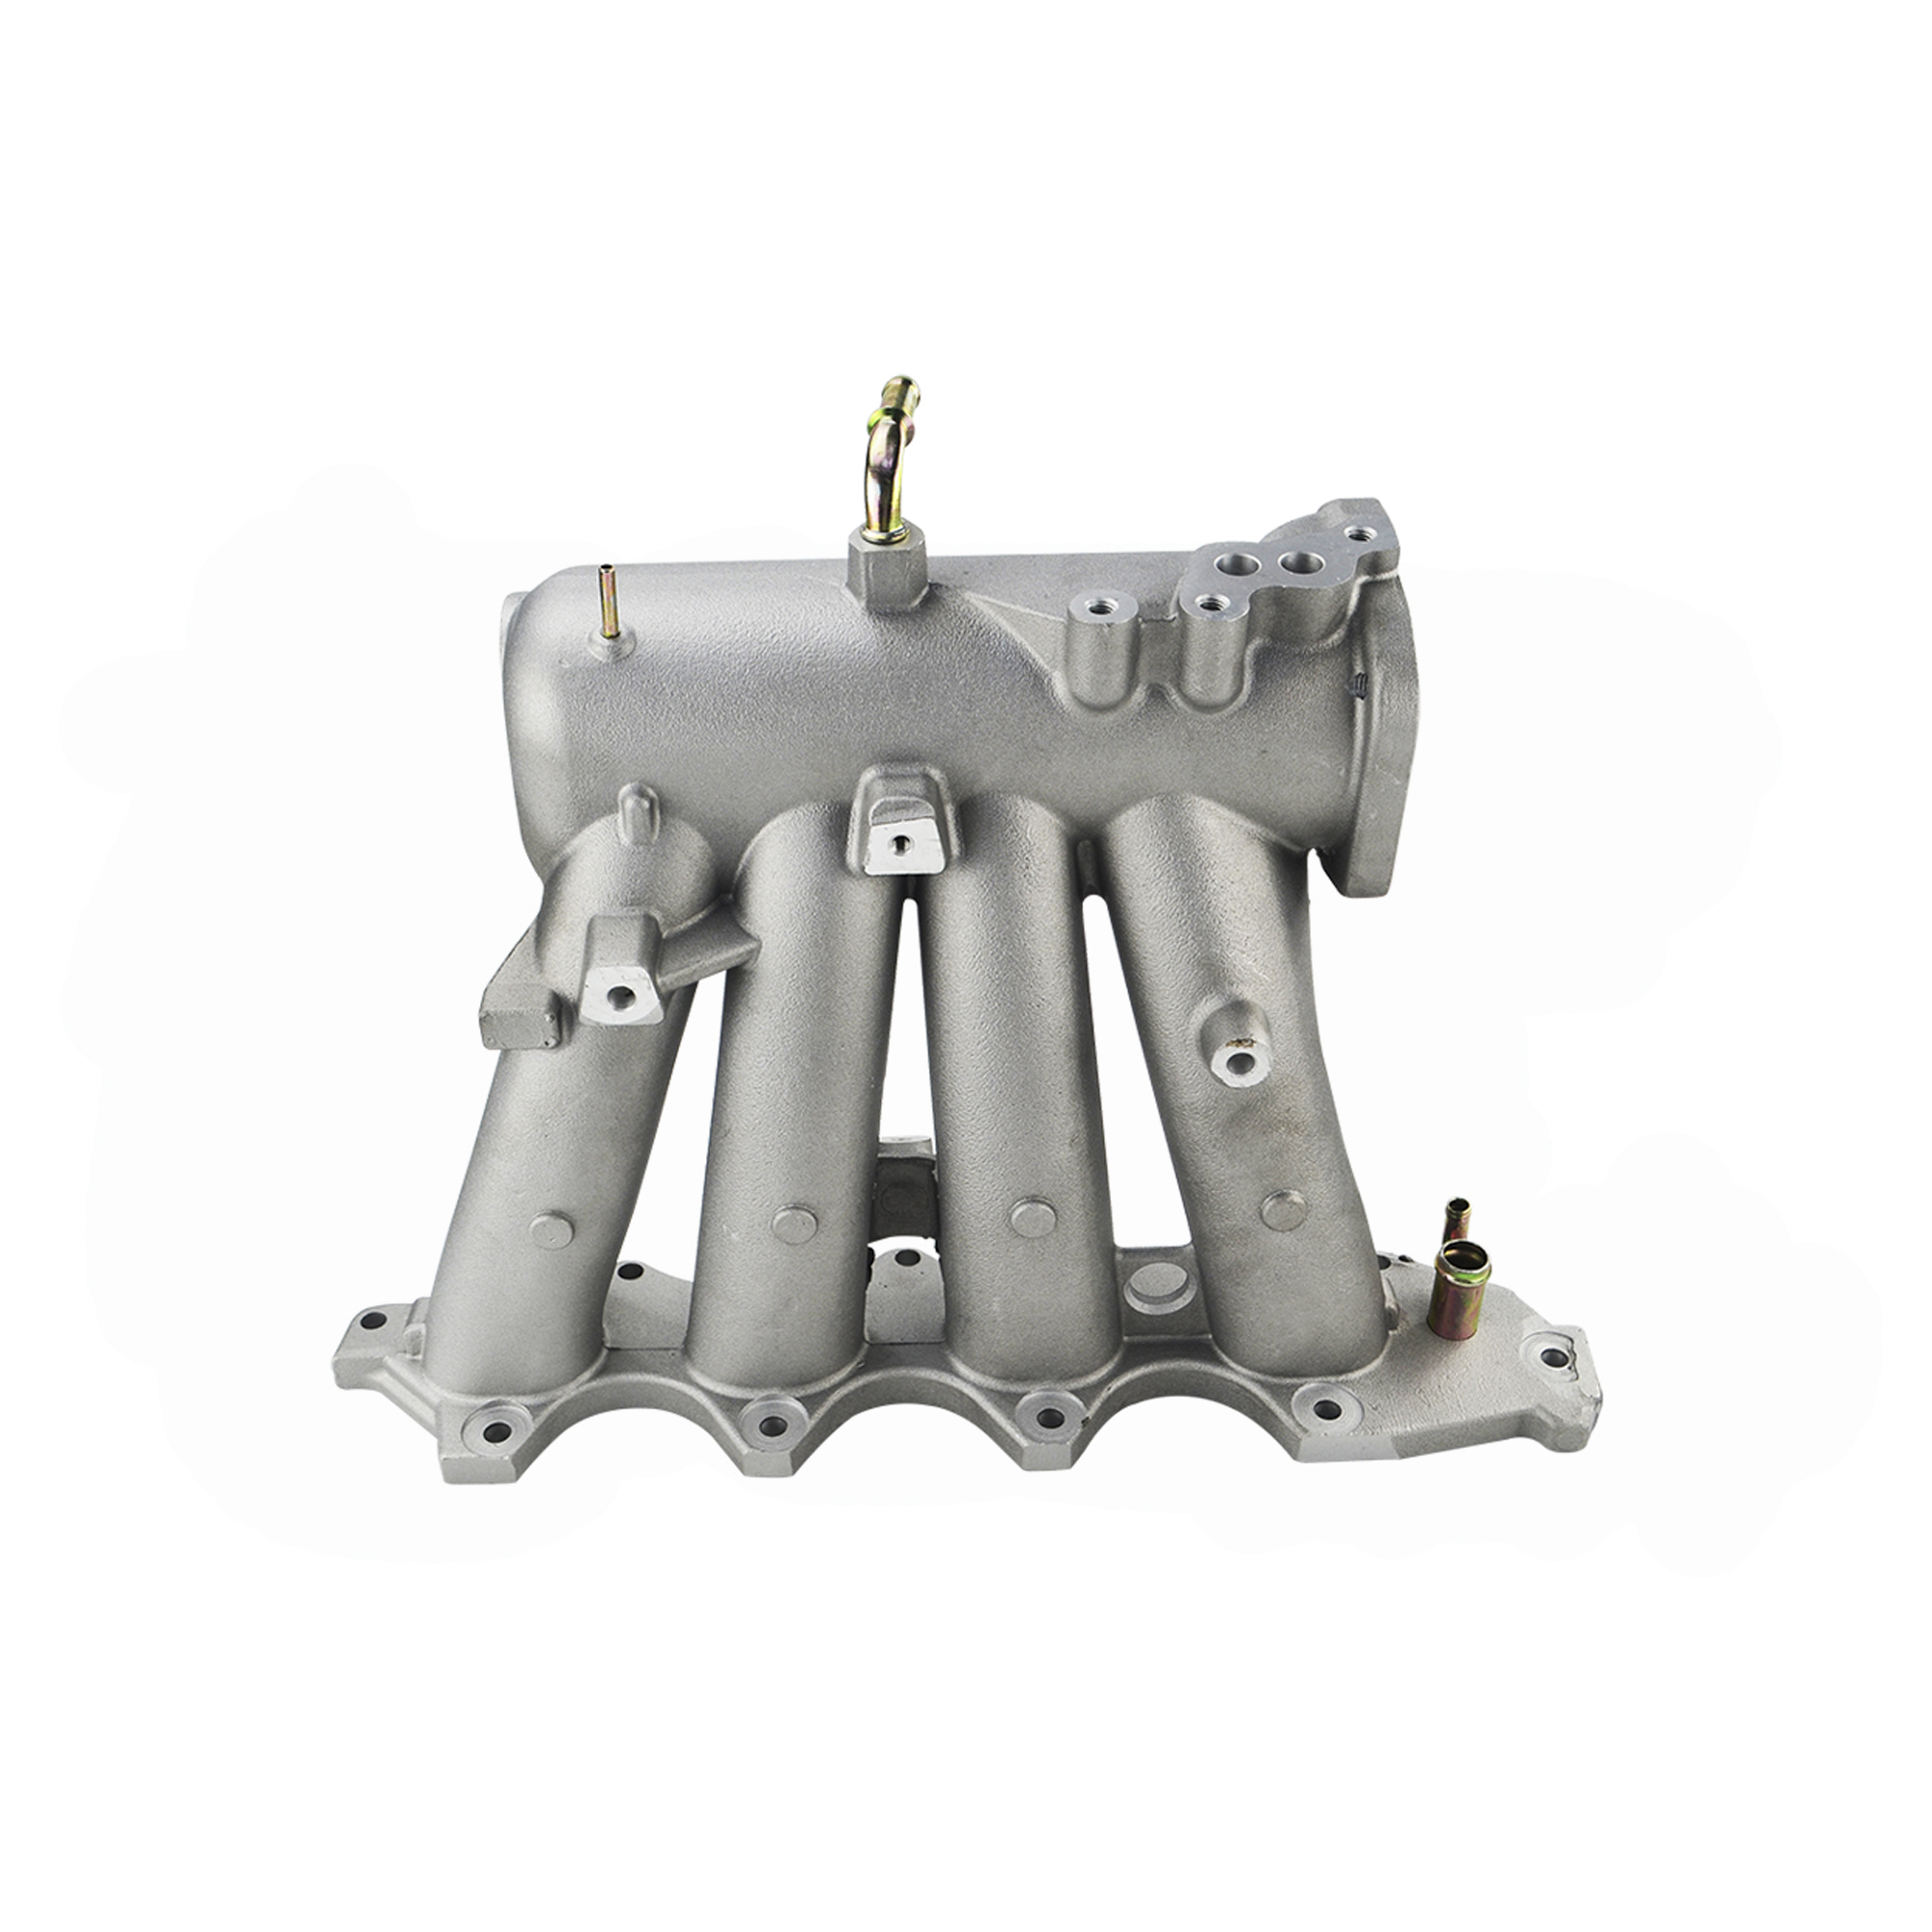 Matech Iso Factory Custom Cast Aluminum Low Pressure Casting Impeller(图11)